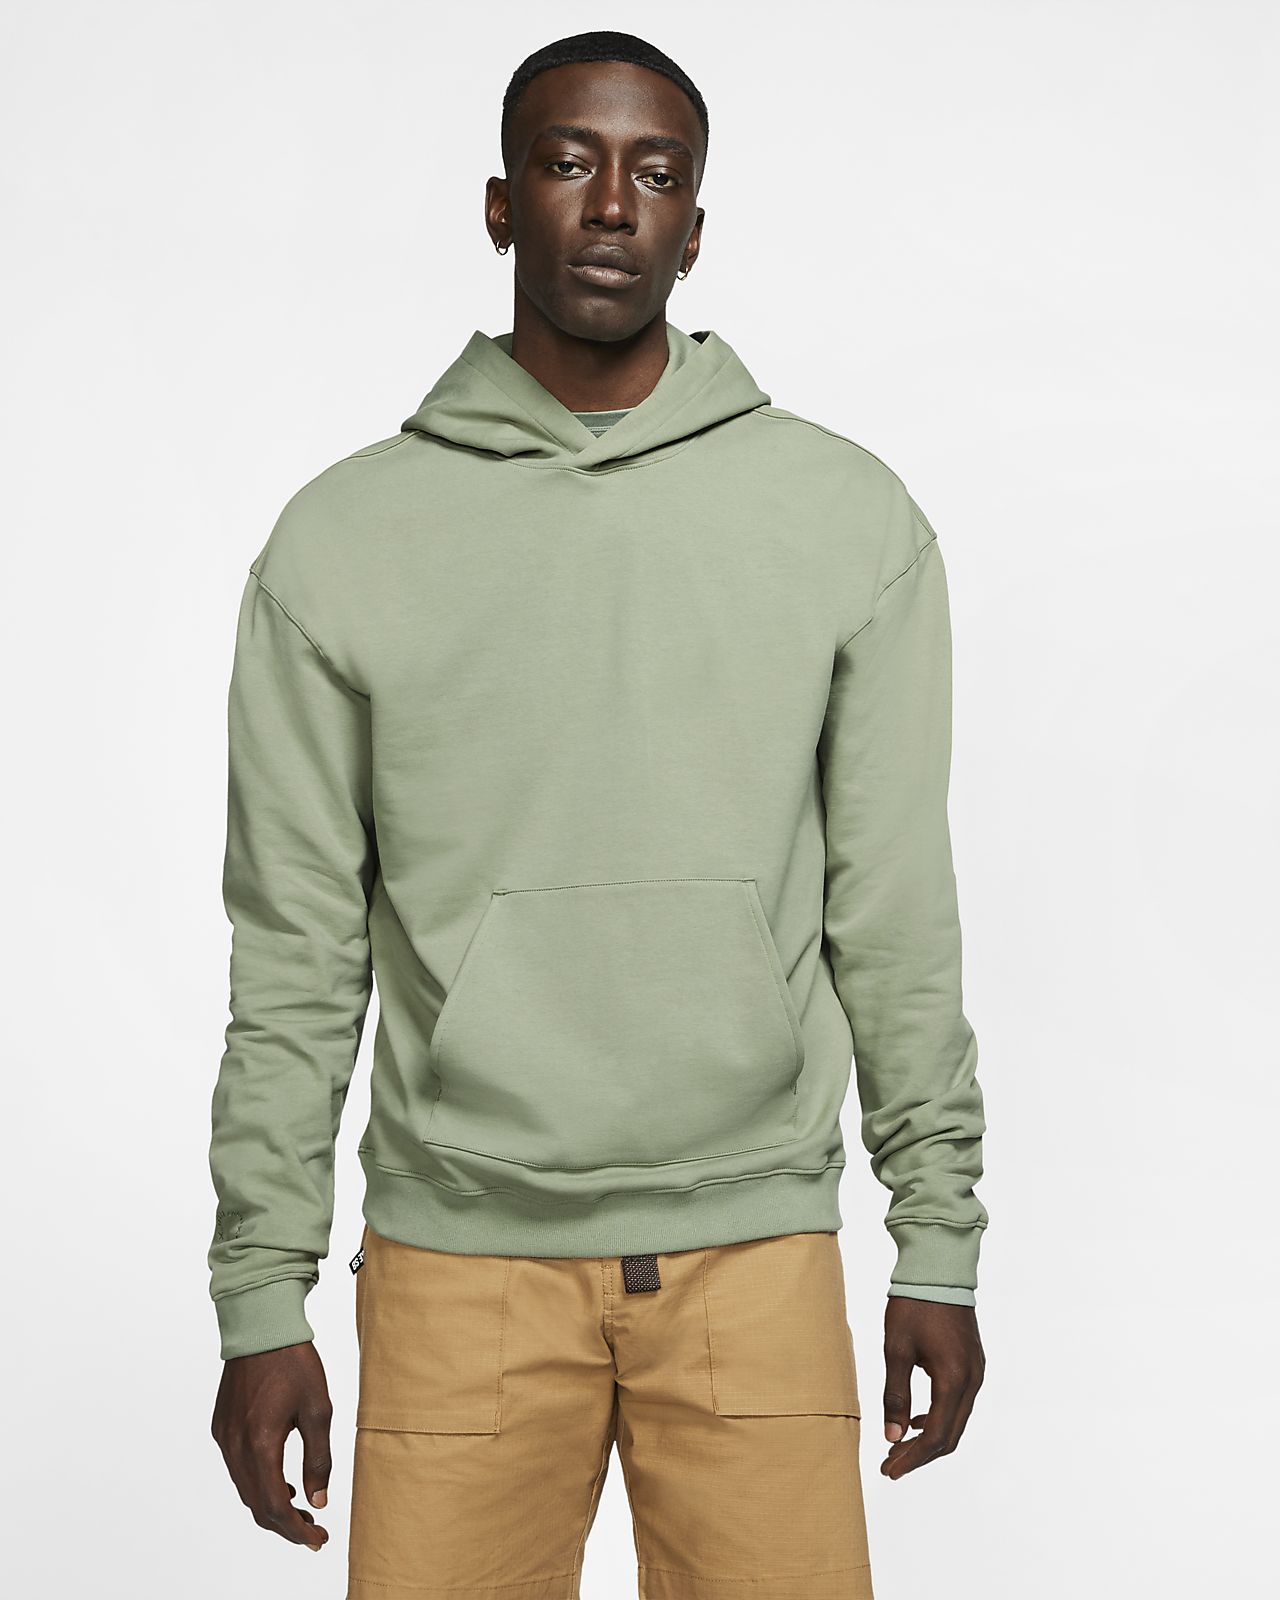 fila hoodie mens price